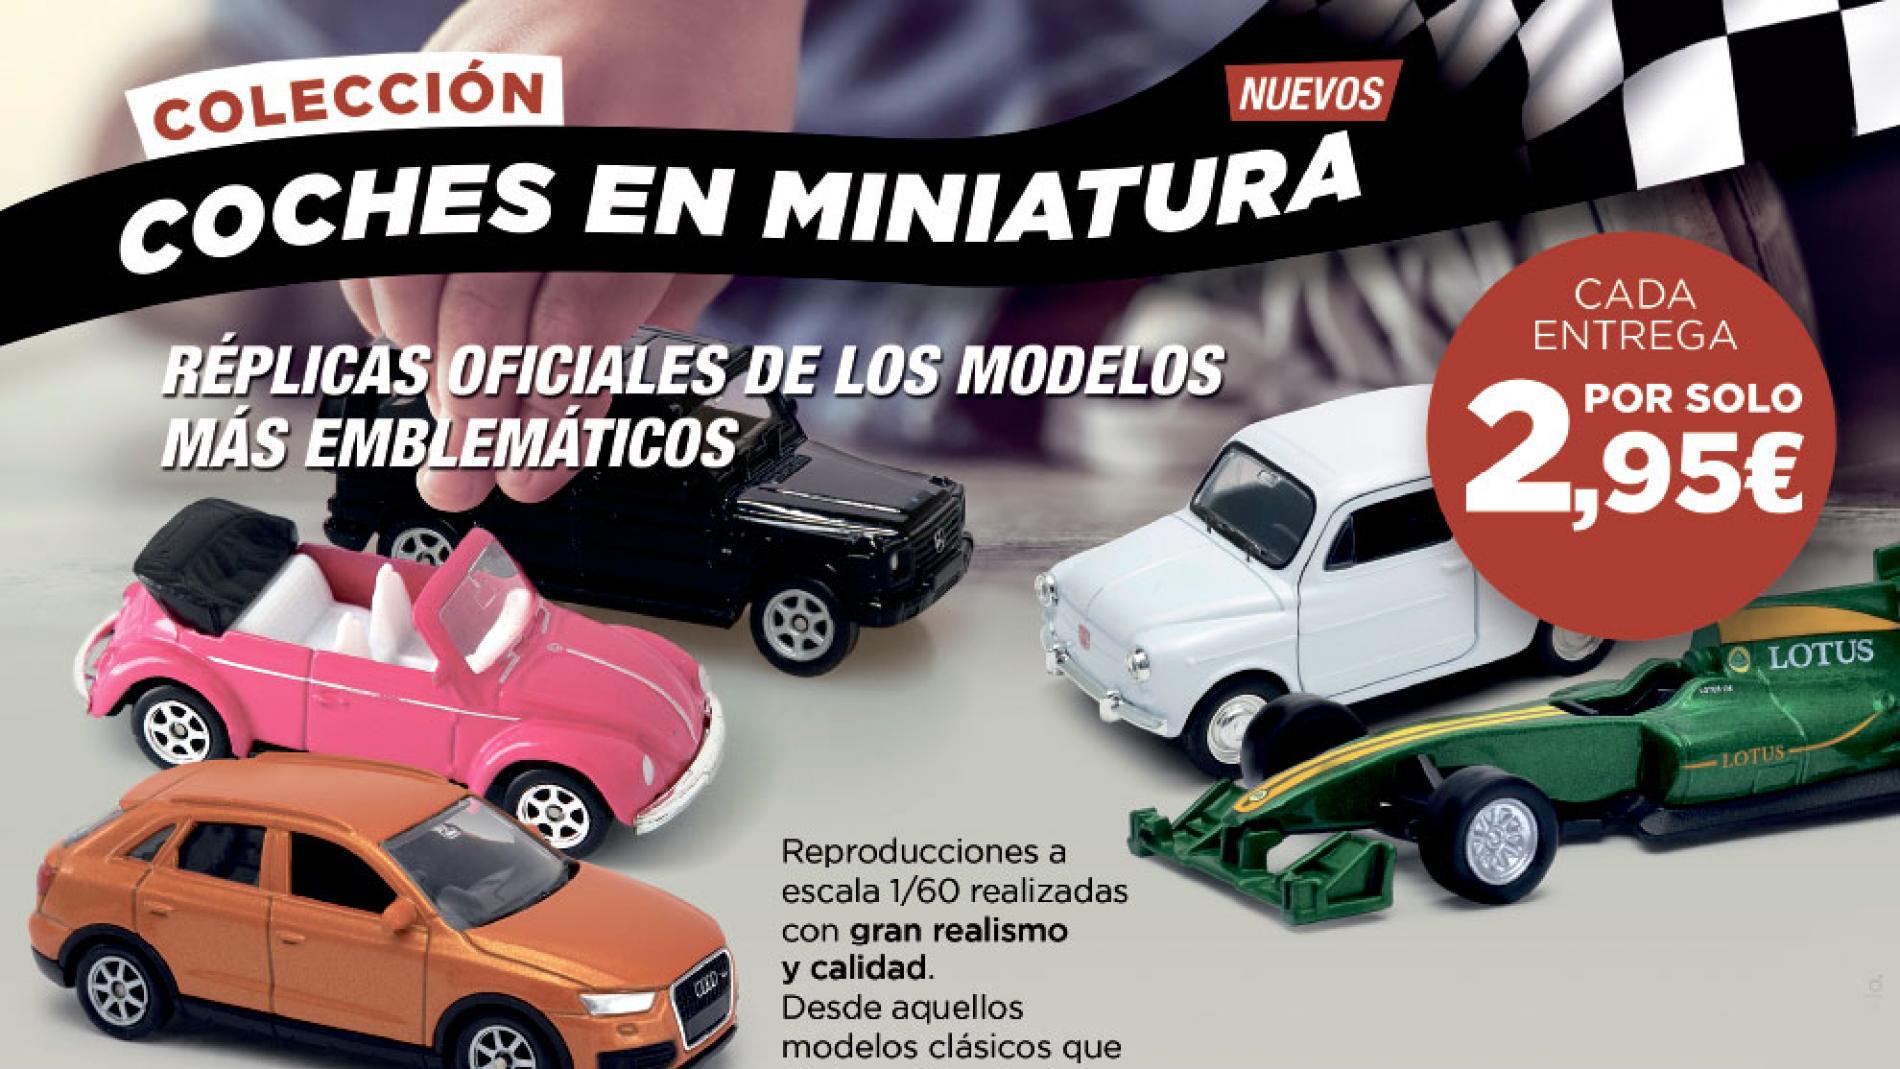 Colección de coches en miniatura